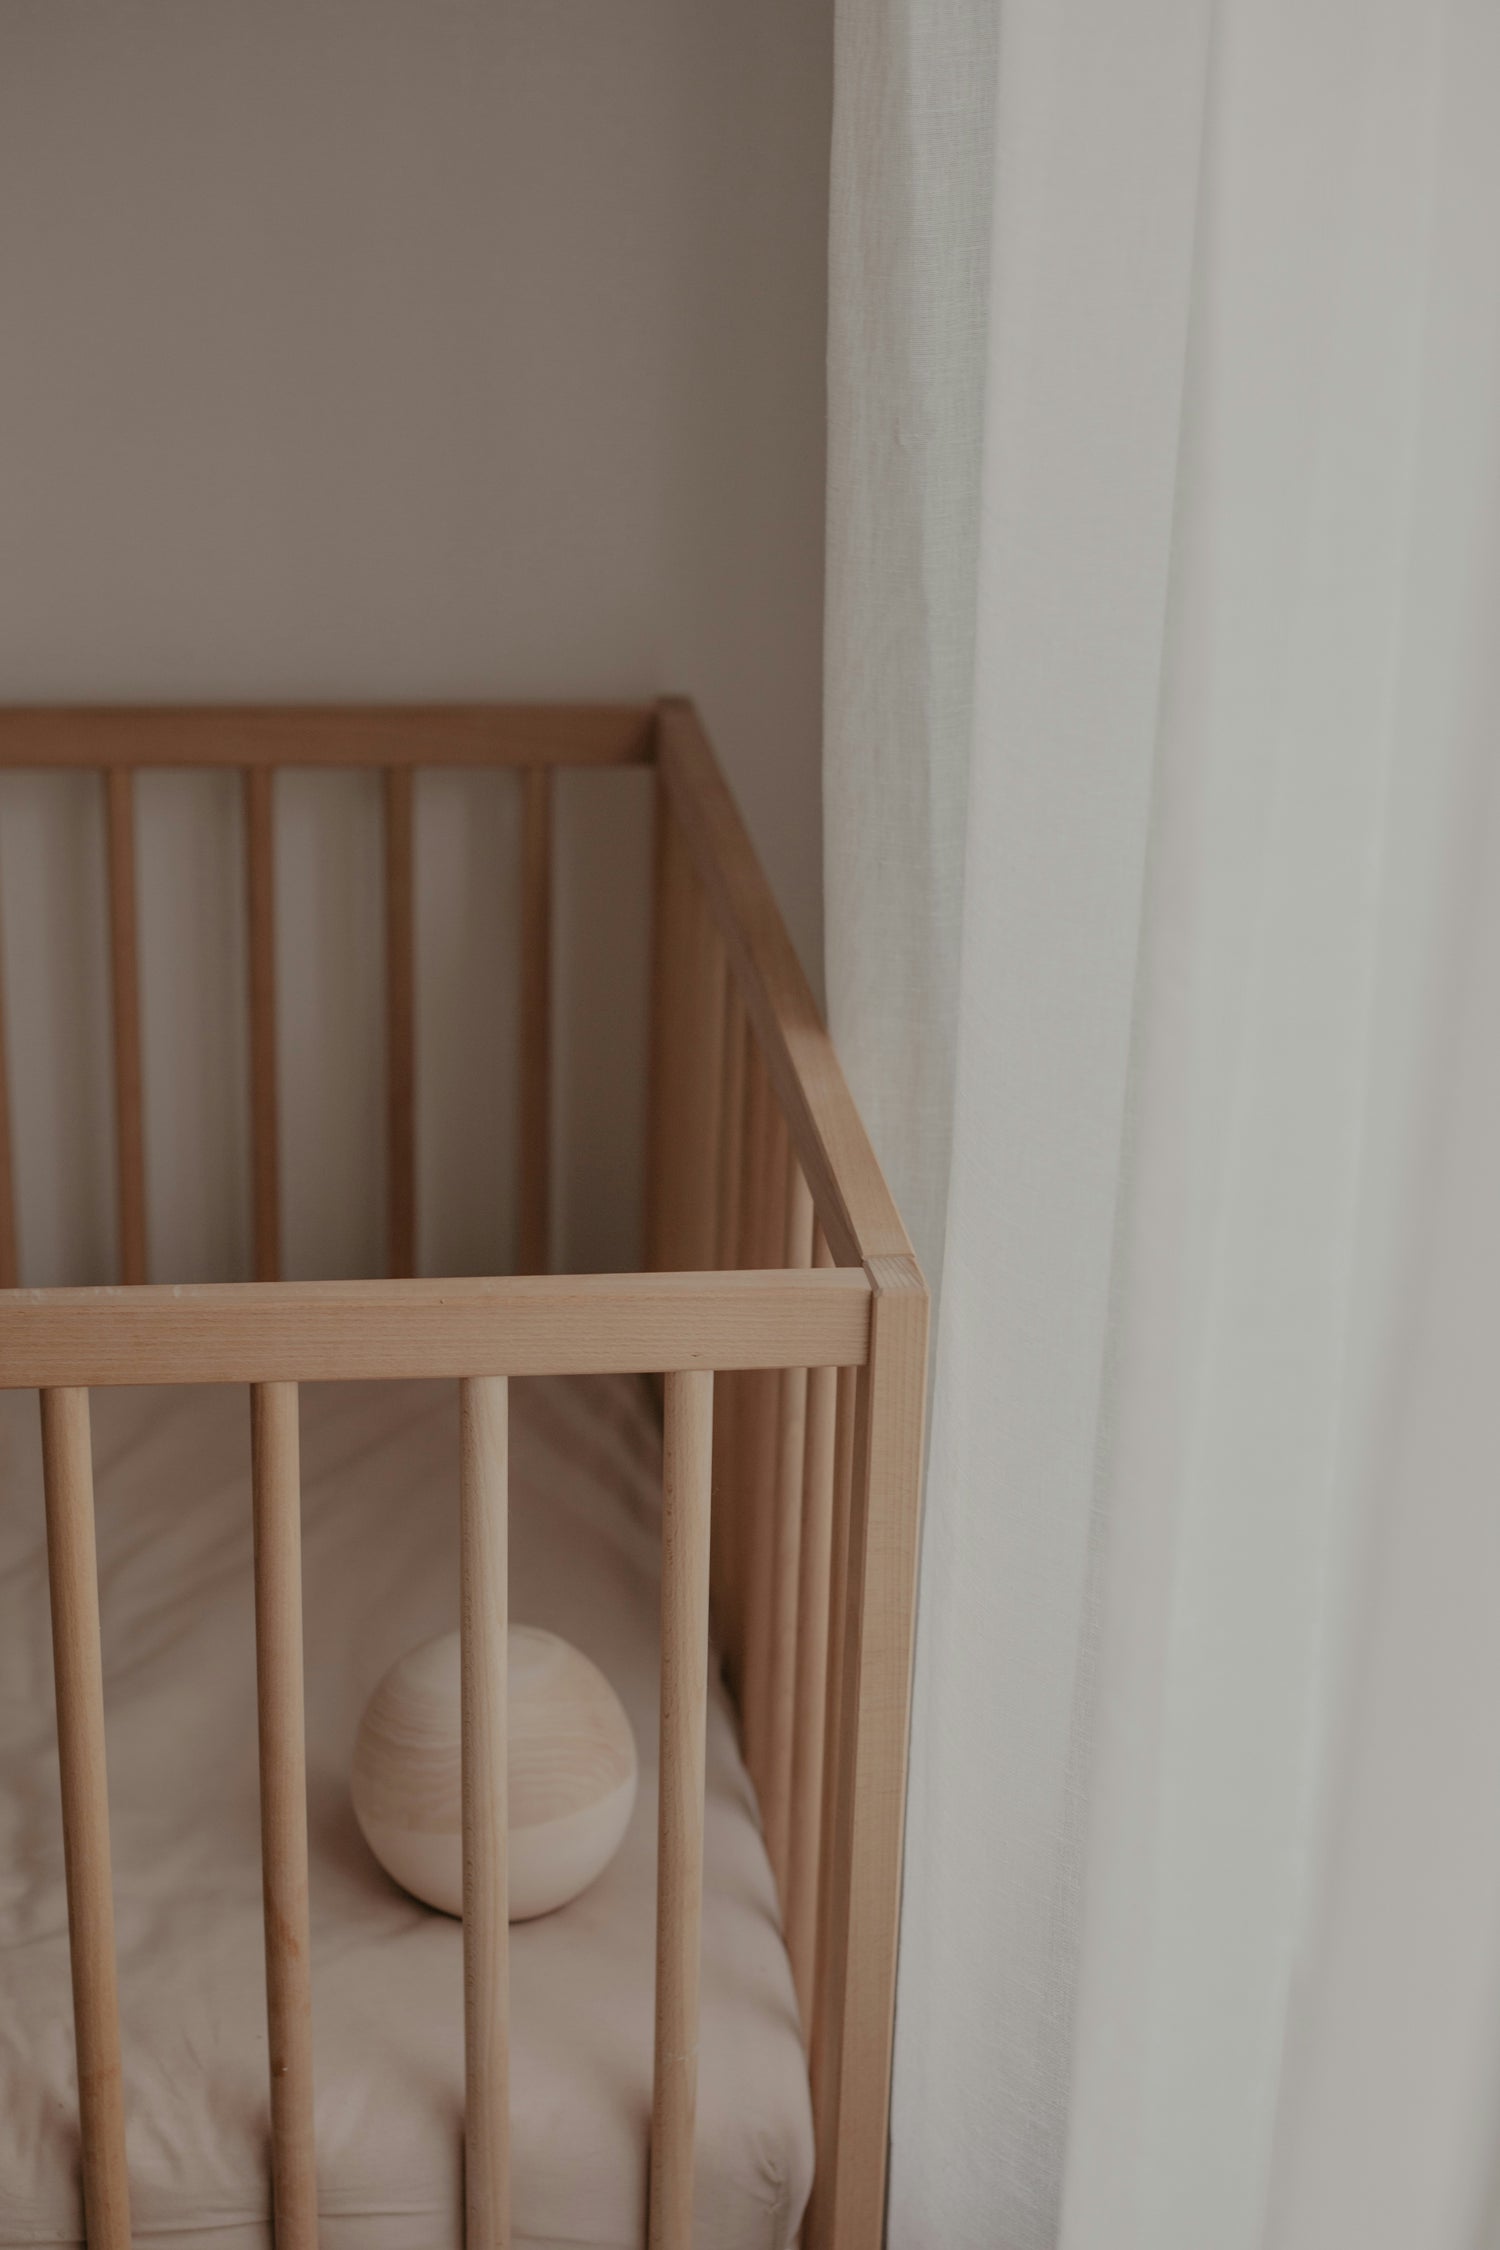 Comment savoir si bébé est prêt à changer de lit ?